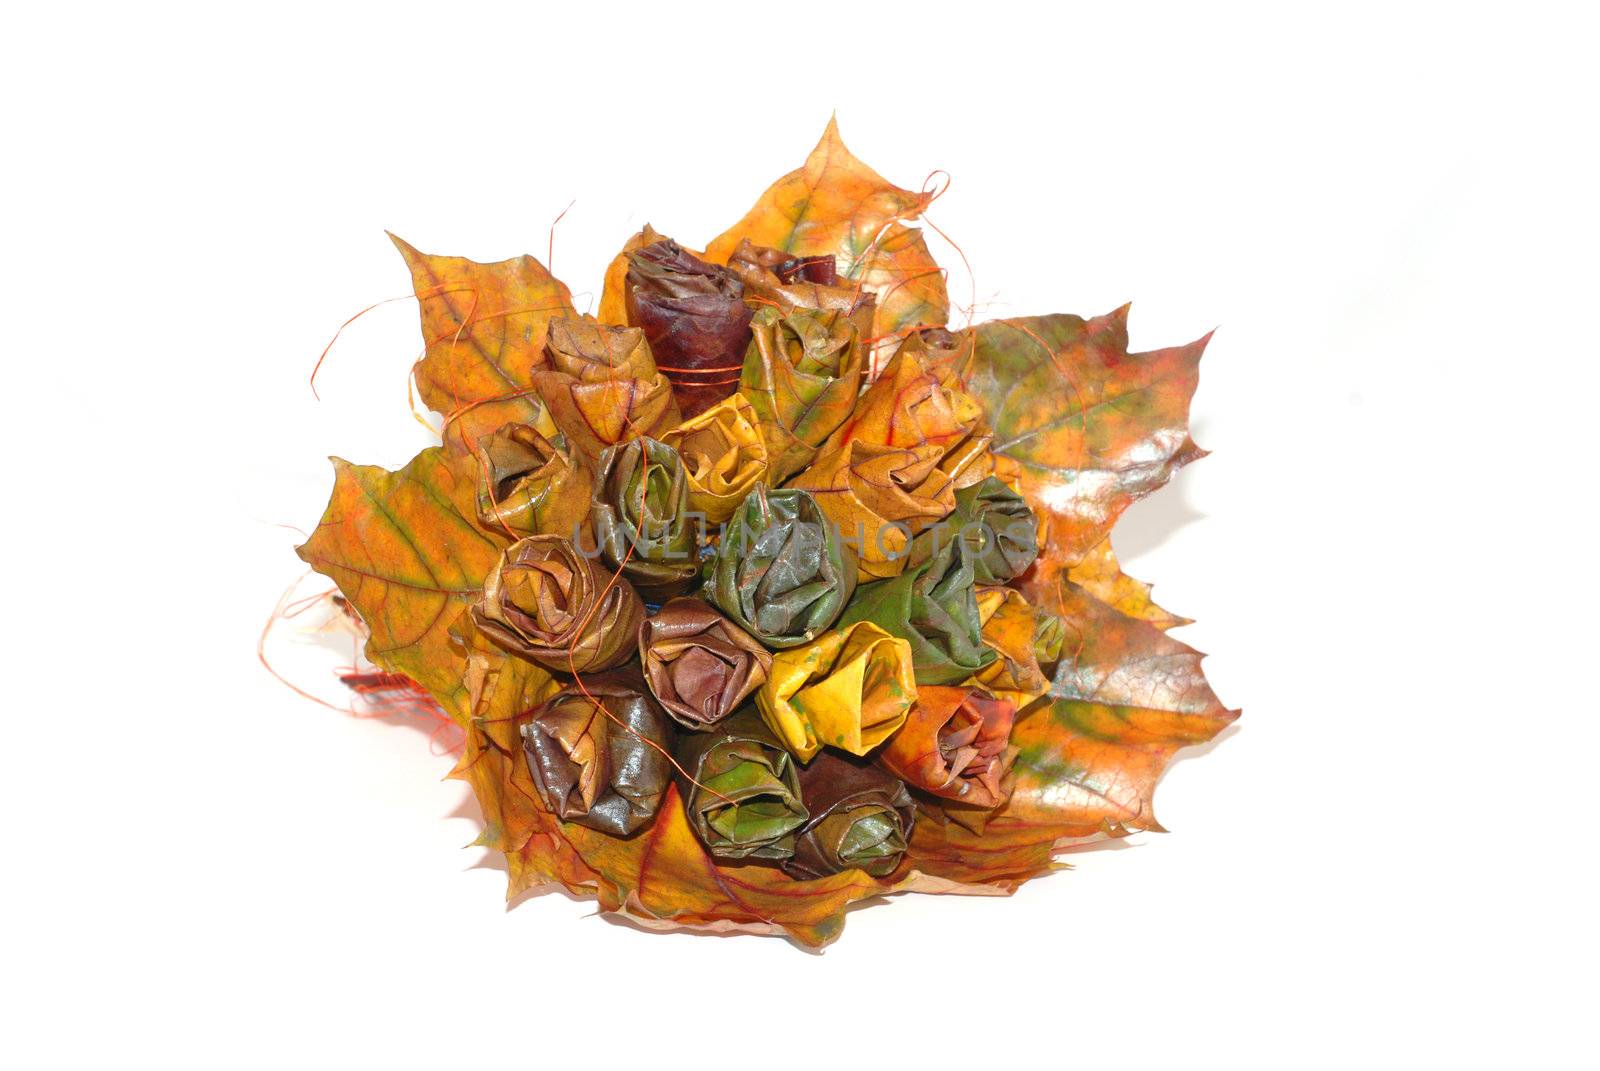 A bouquet of autumn leaves by wojciechkozlowski